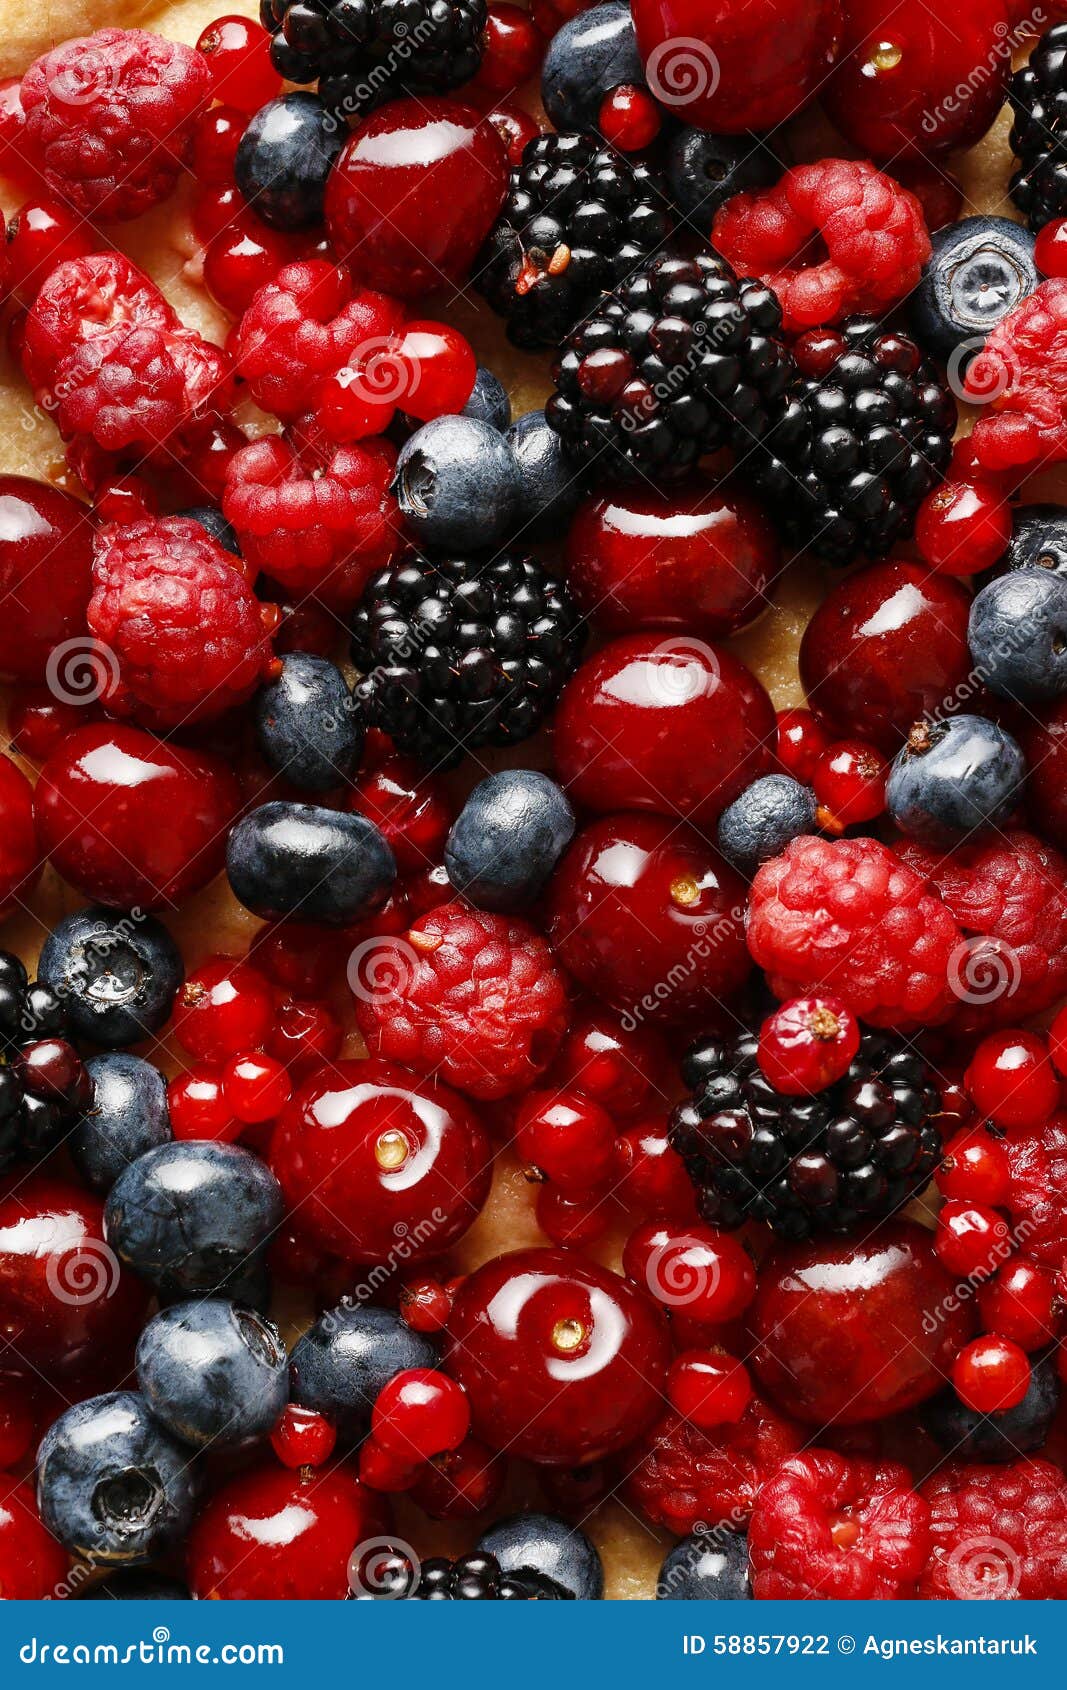 sweet tart with raspberries, blueberries, blackberries, cherries